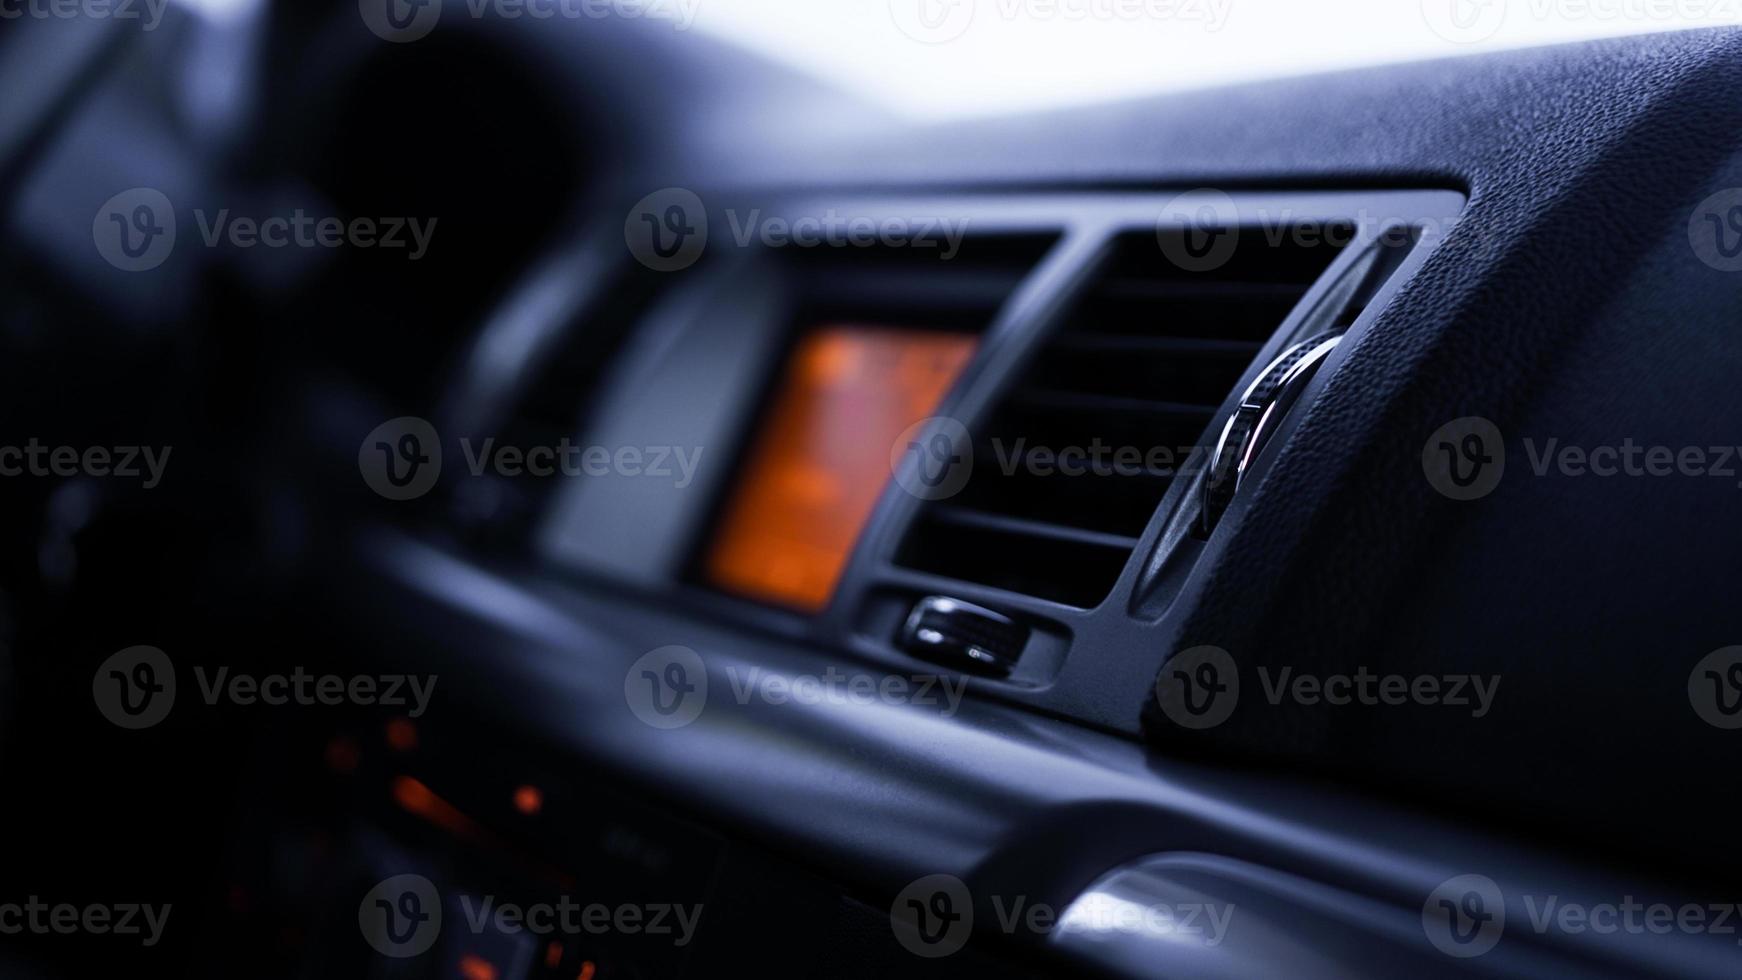 knappar på radio, instrumentpanel, klimatkontroll i bil på nära håll foto